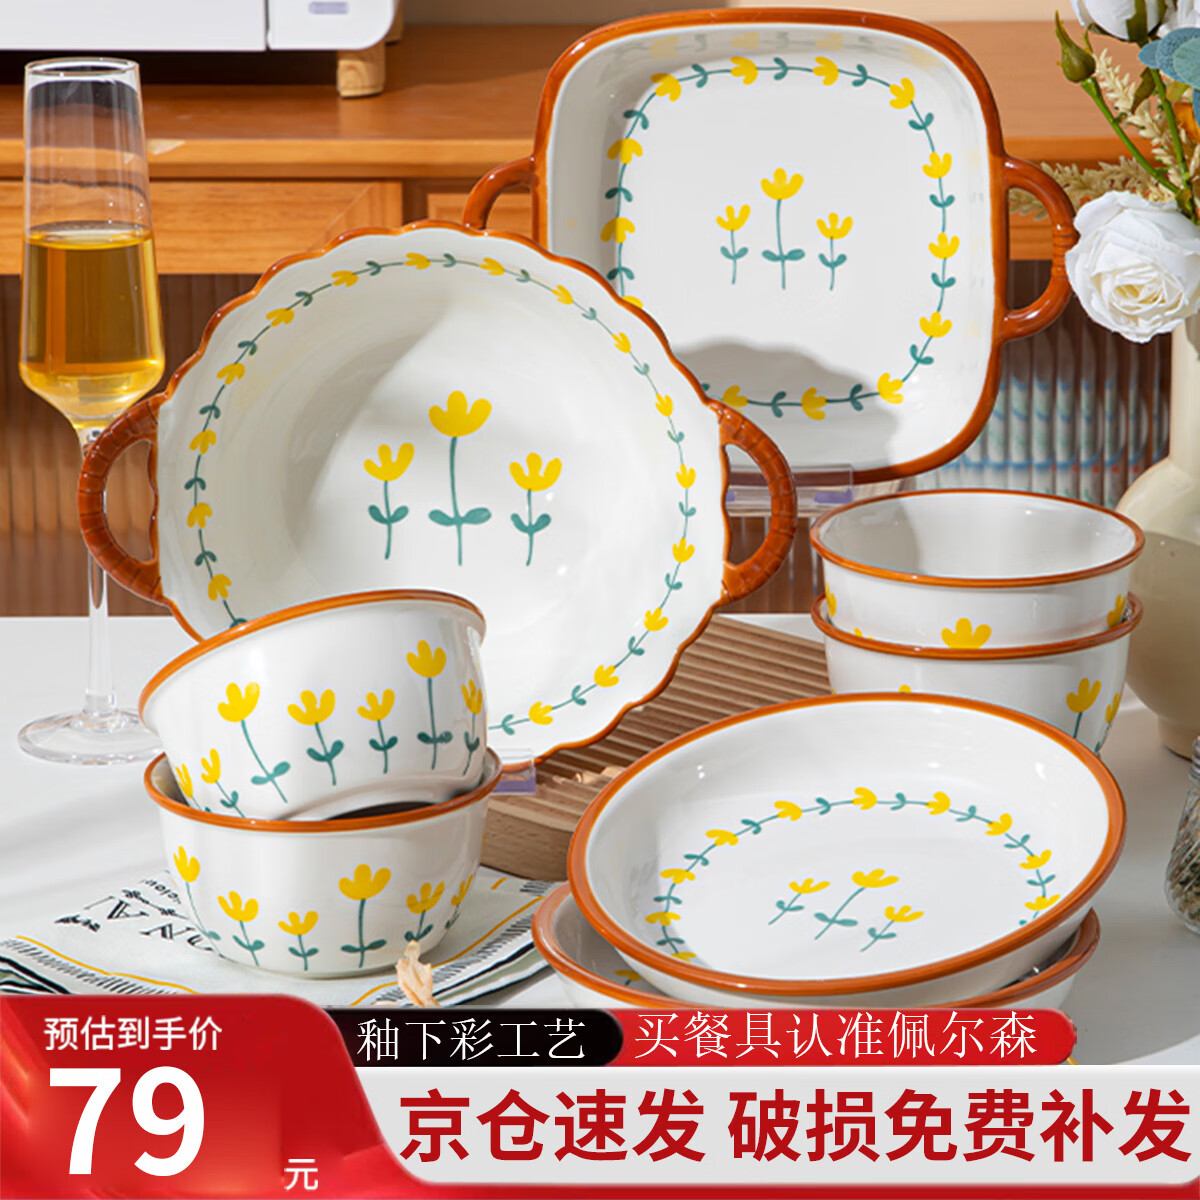 佩尔森釉下彩陶瓷餐具碗碟套装家用情侣简约饭碗盘筷餐具整套山菊花8头